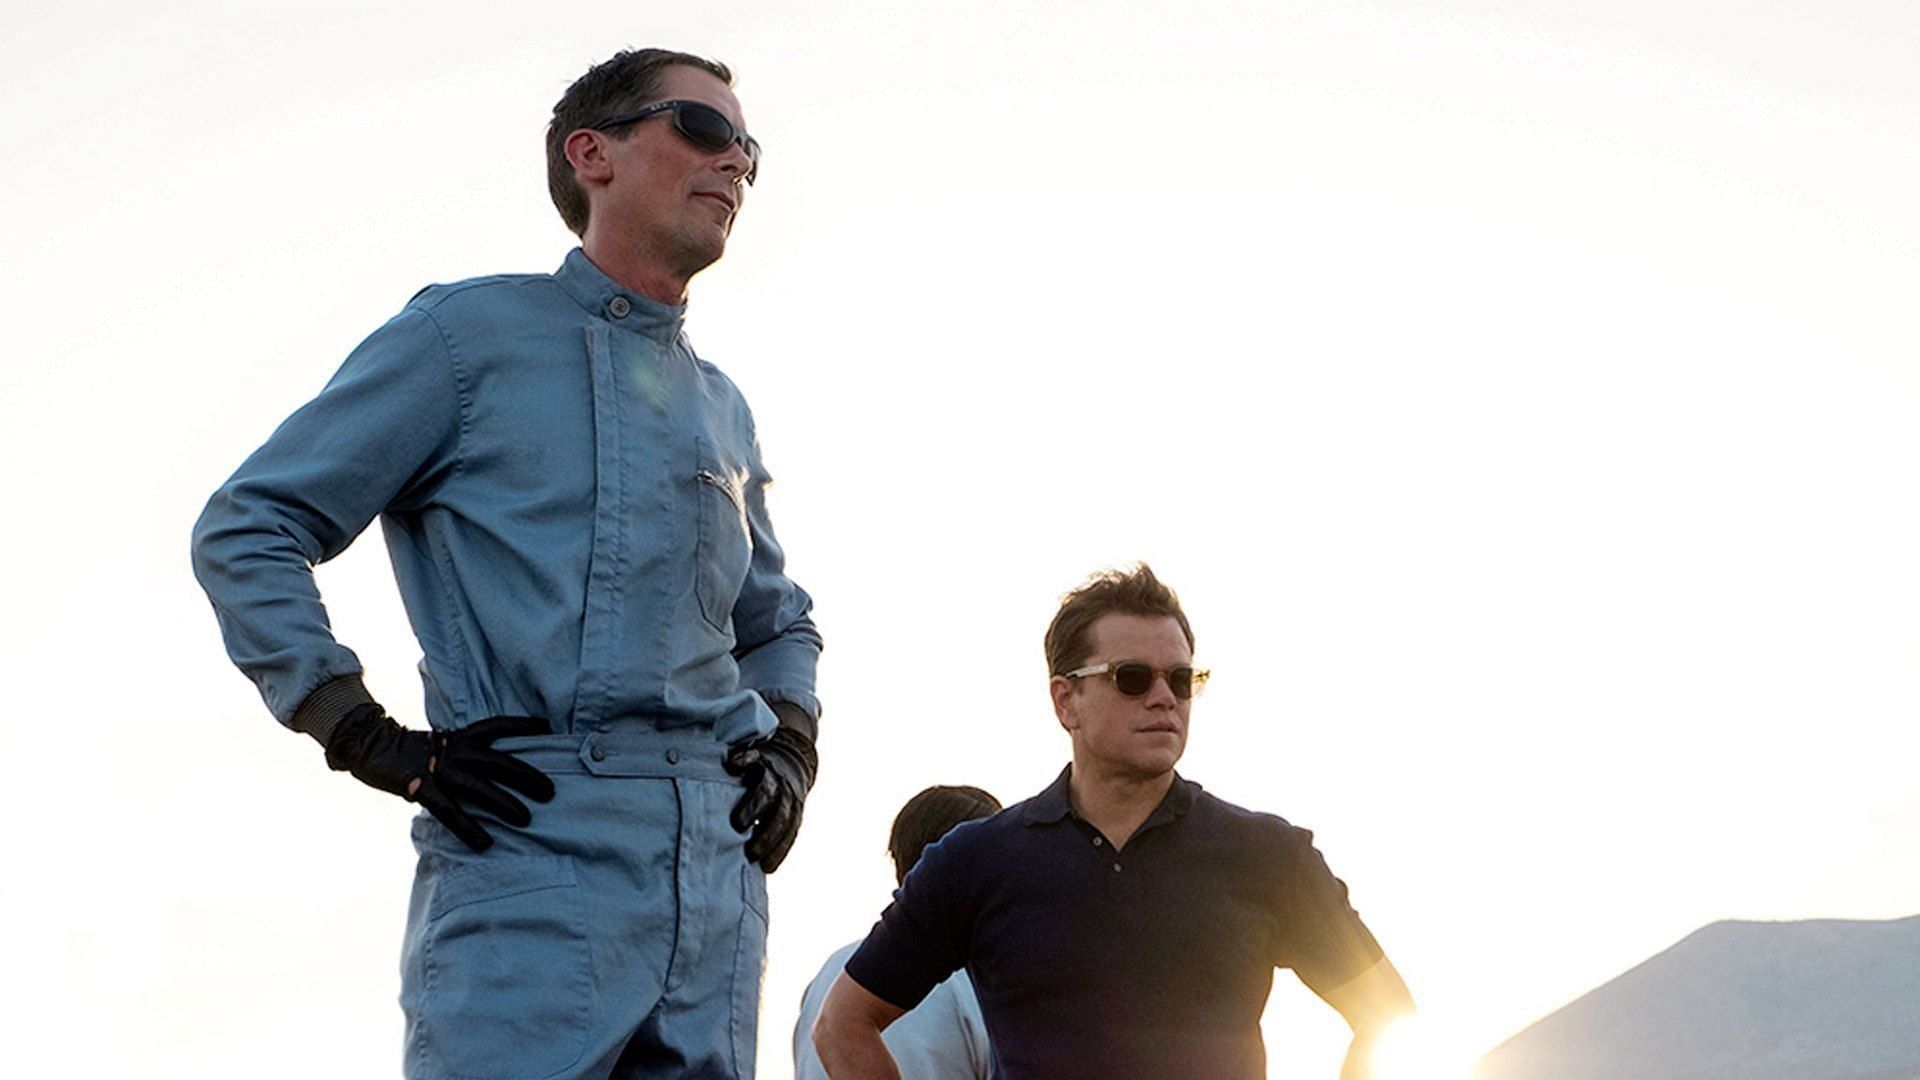 Christian Bale and Matt Damon seen in Ford v Ferrari (Image via Facebook/Ford v Ferrari)